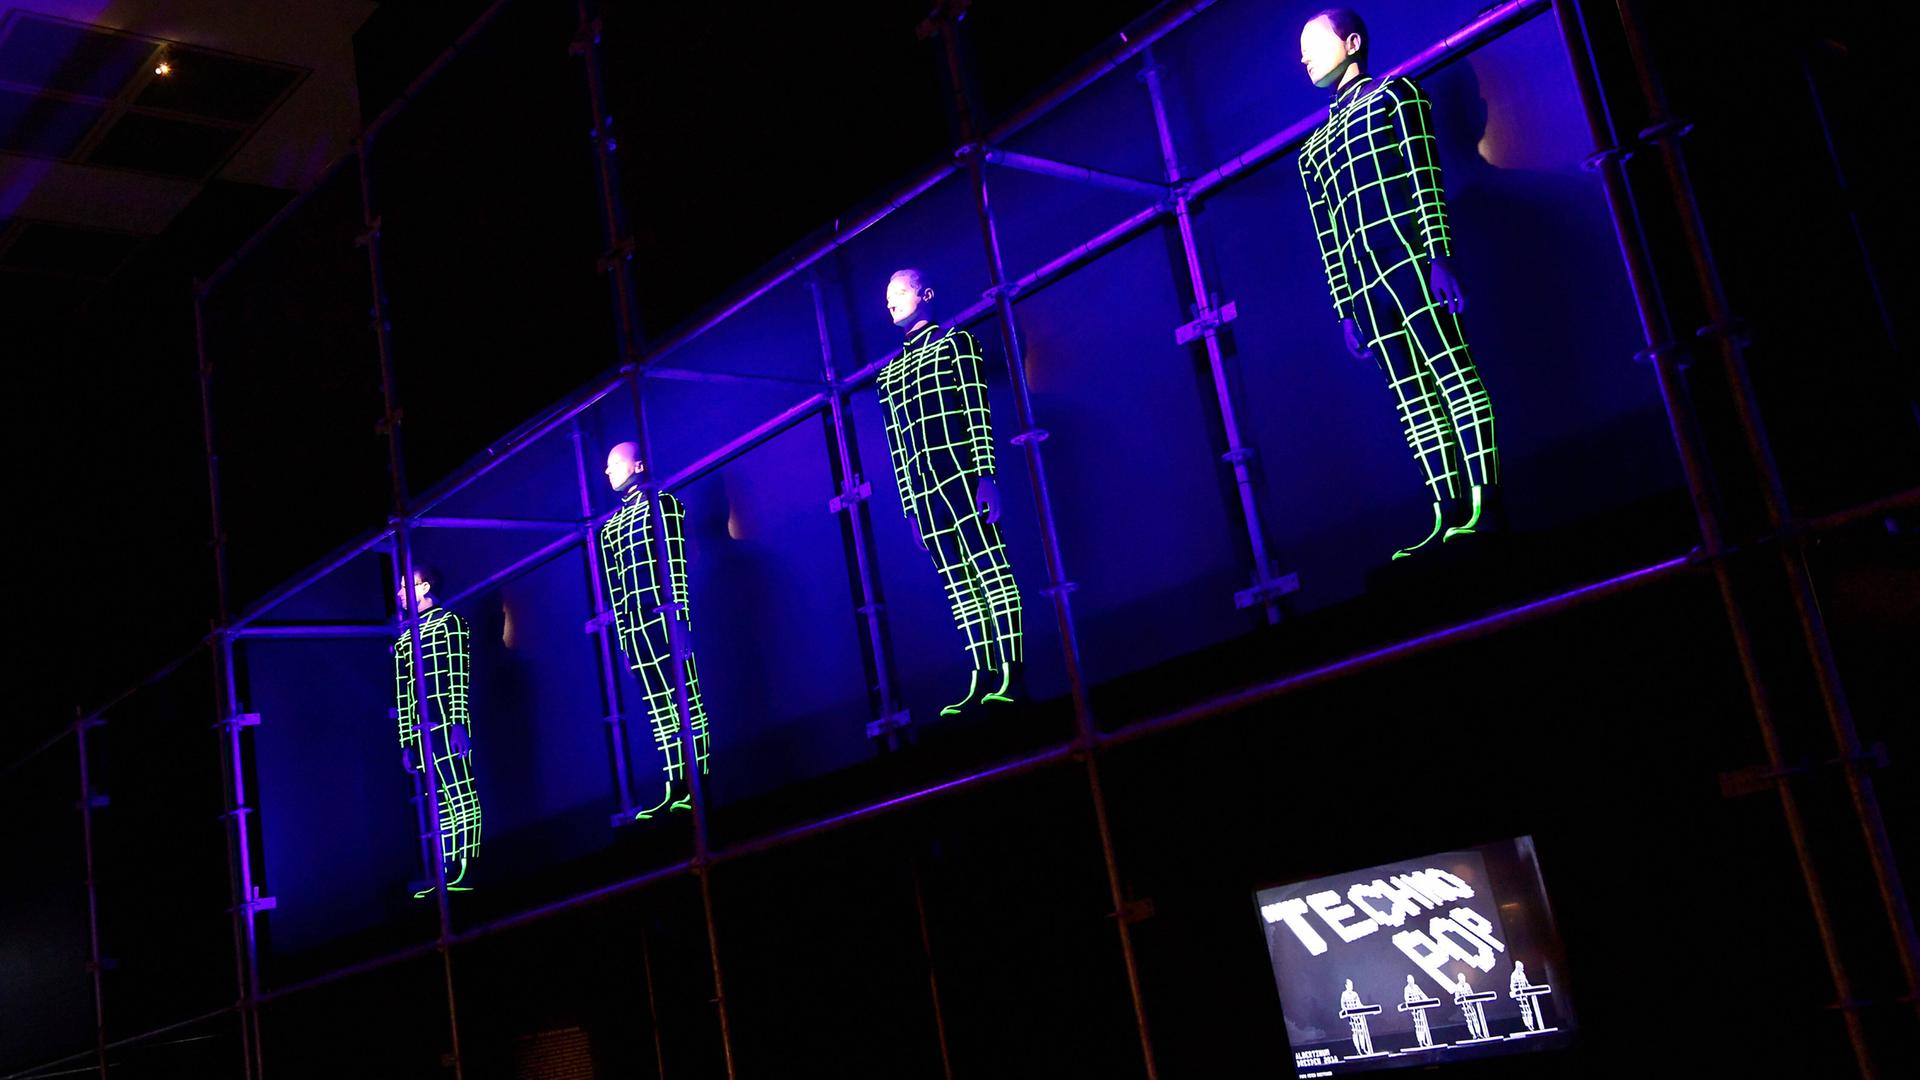 Vier Menschen hängen als elektronische Gitternetze an der Wand. Rechts unten steht auf einem Bildschirm "Techno Pop".